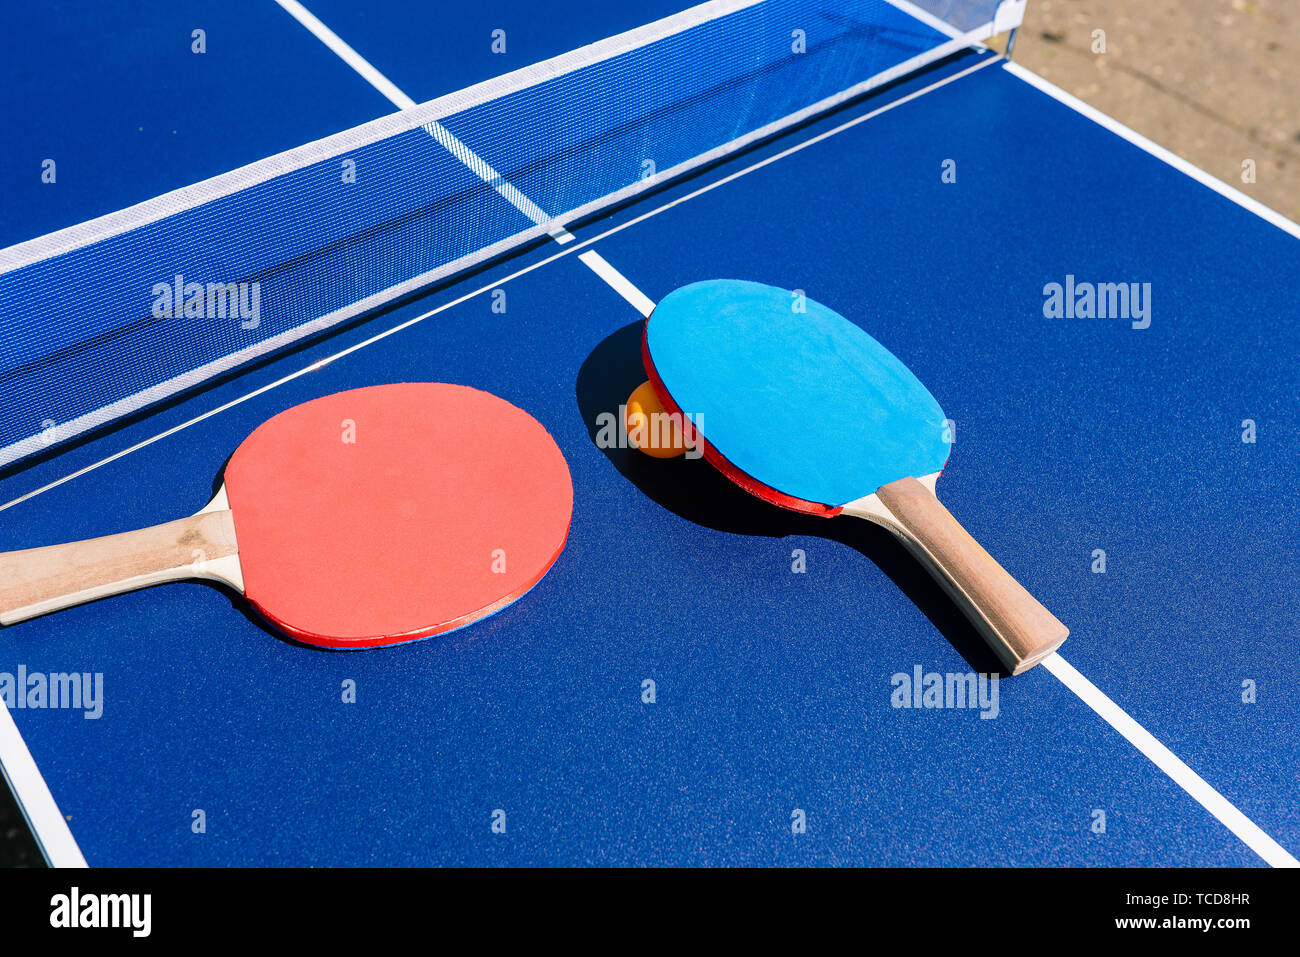 Table et raquettes pour jouer au tennis de table ou ping-pong. Tableau bleu  avec filet blanc et bleu et rouge. Balle Orange Photo Stock - Alamy